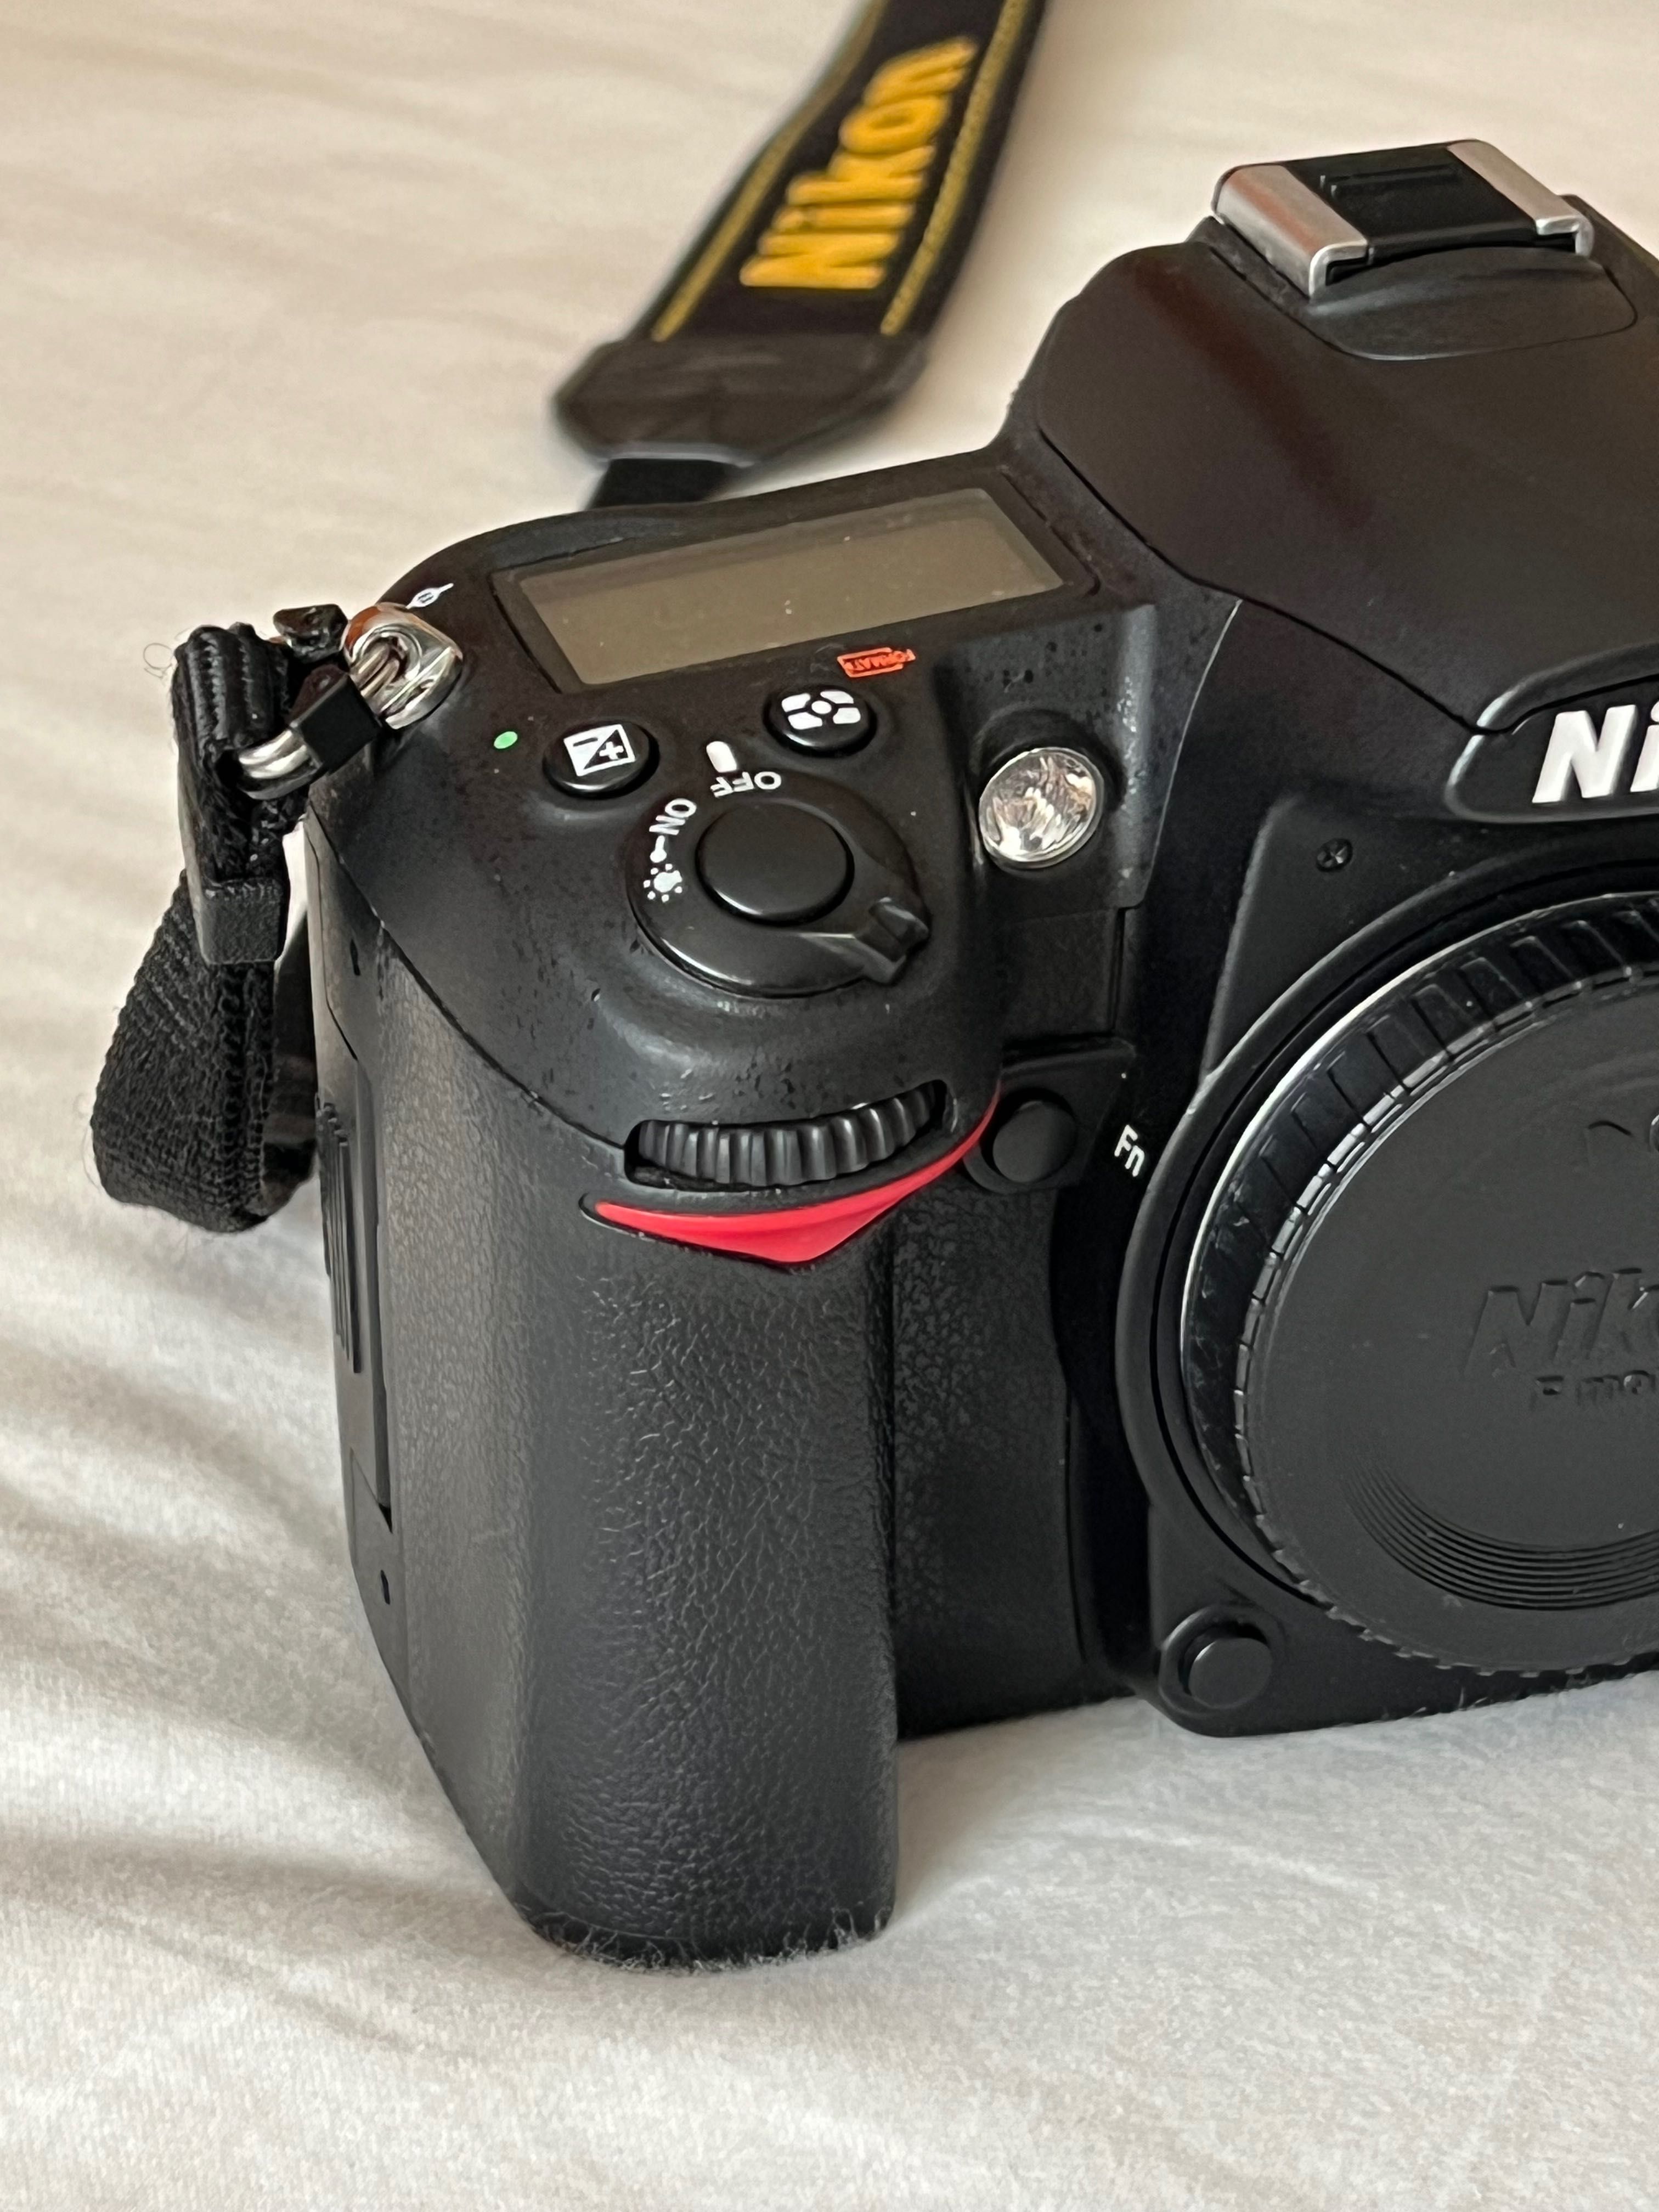 Nikon D7000 + 18-55mm + 55-200mm + 50mm 1.8D